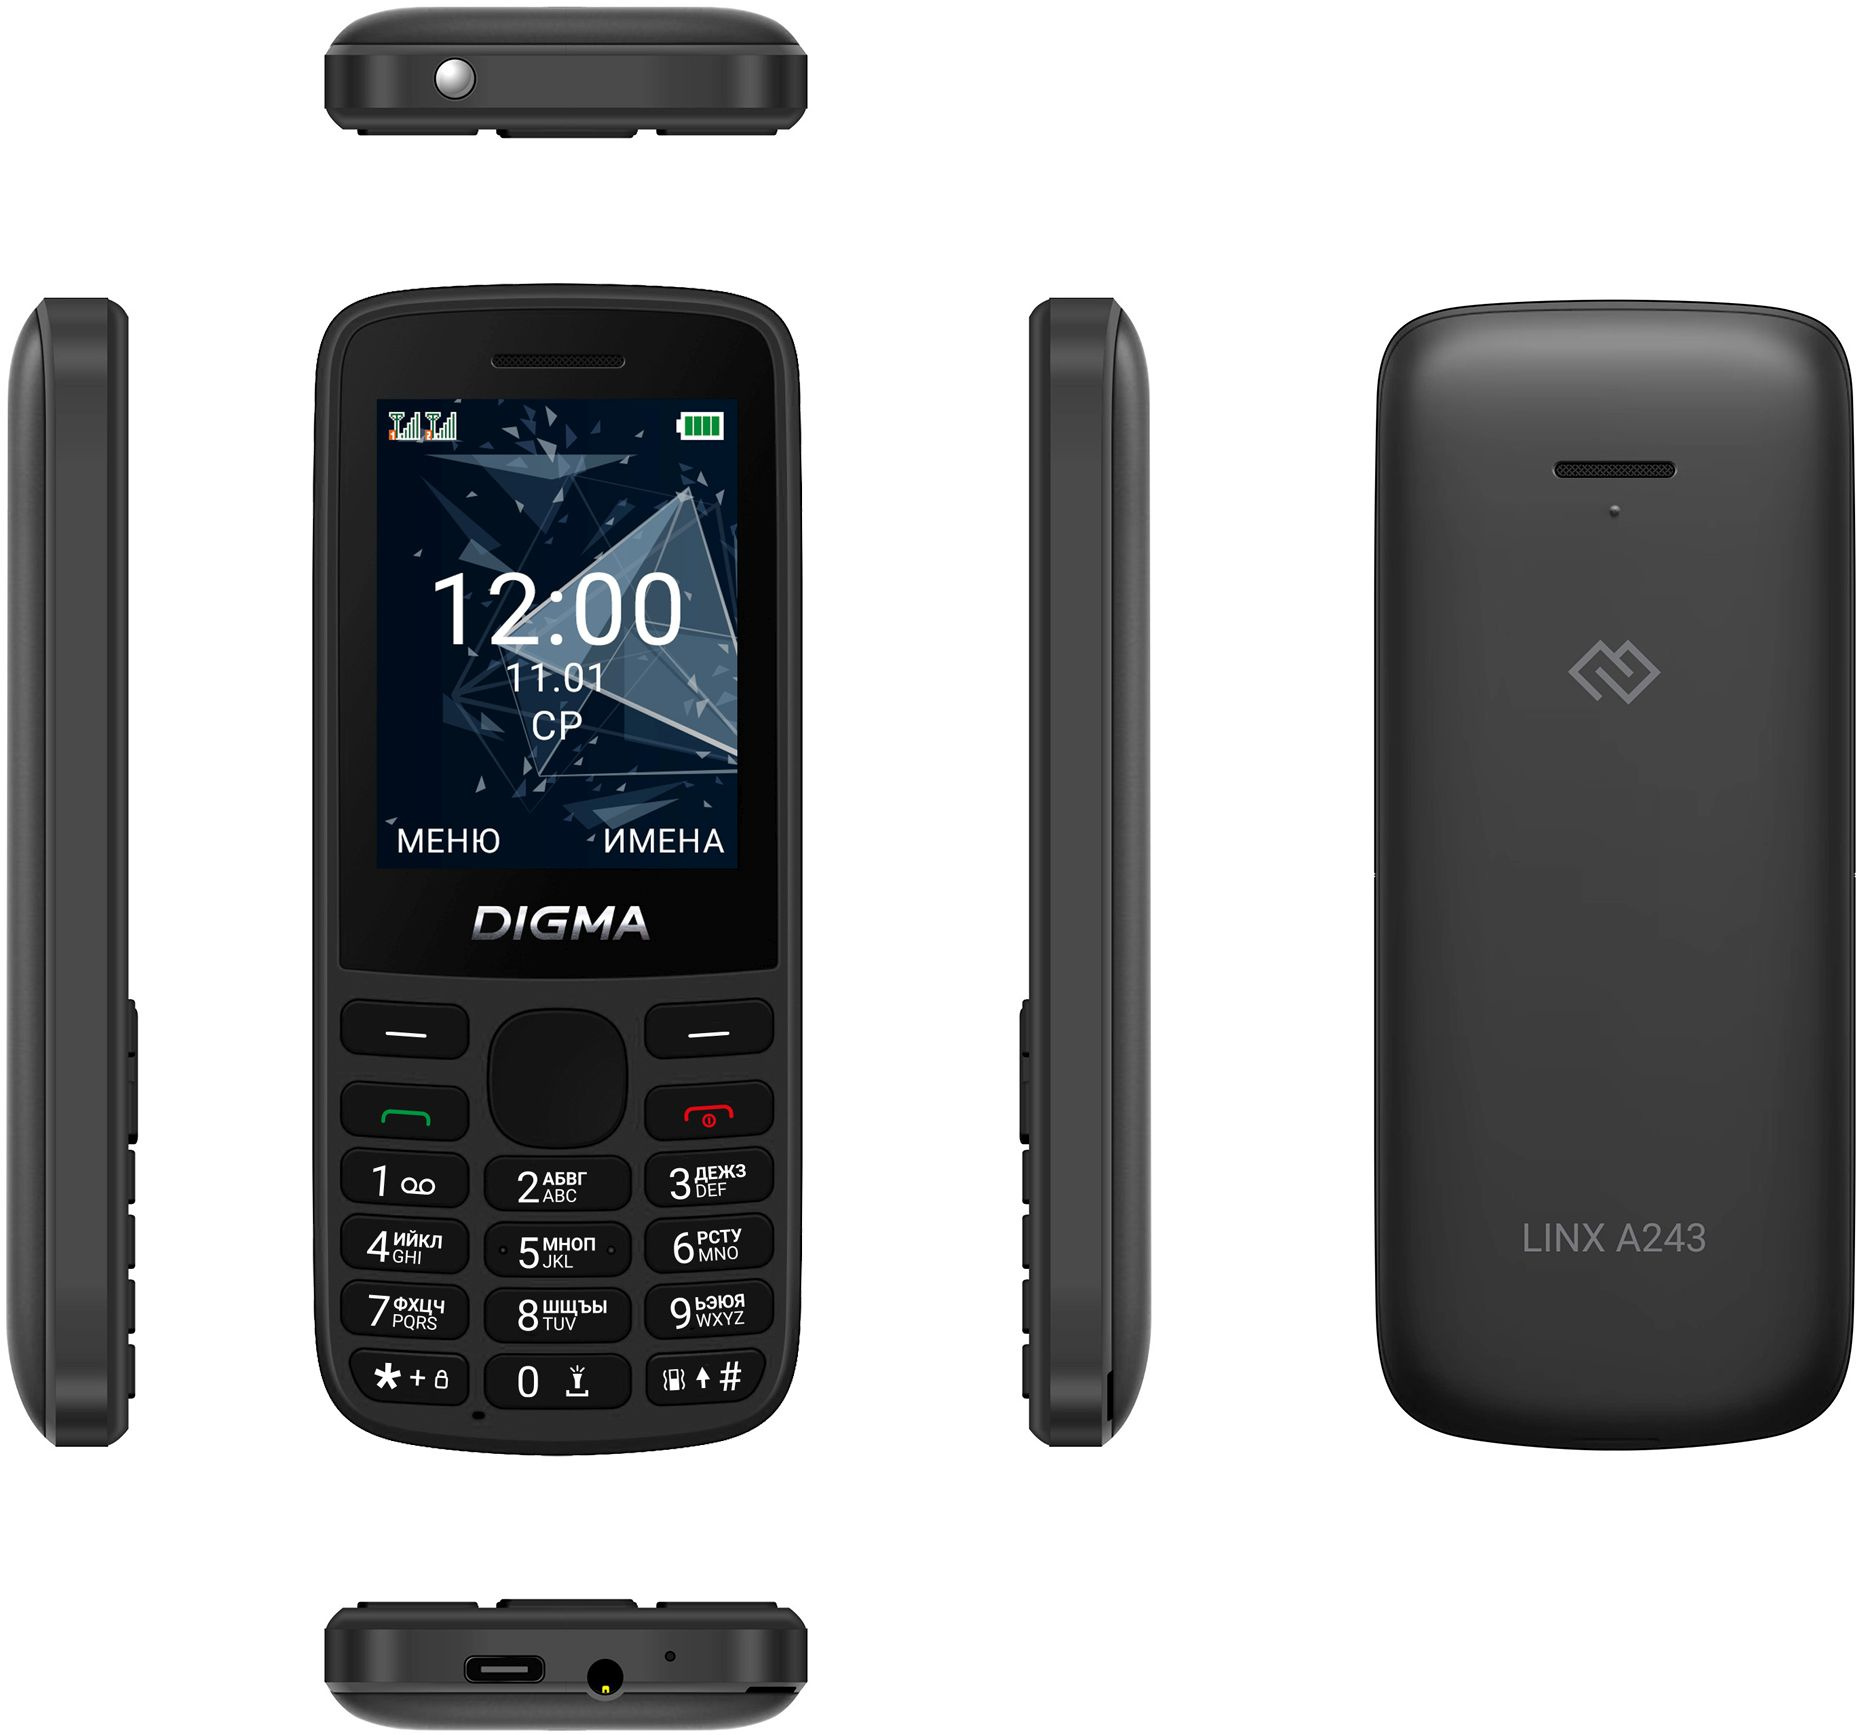 Мобильный телефон Digma A243 Linx 32Mb черный моноблок 2Sim 2.4" 240x320 GSM900/1800 GSM1900 microSD max32Gb